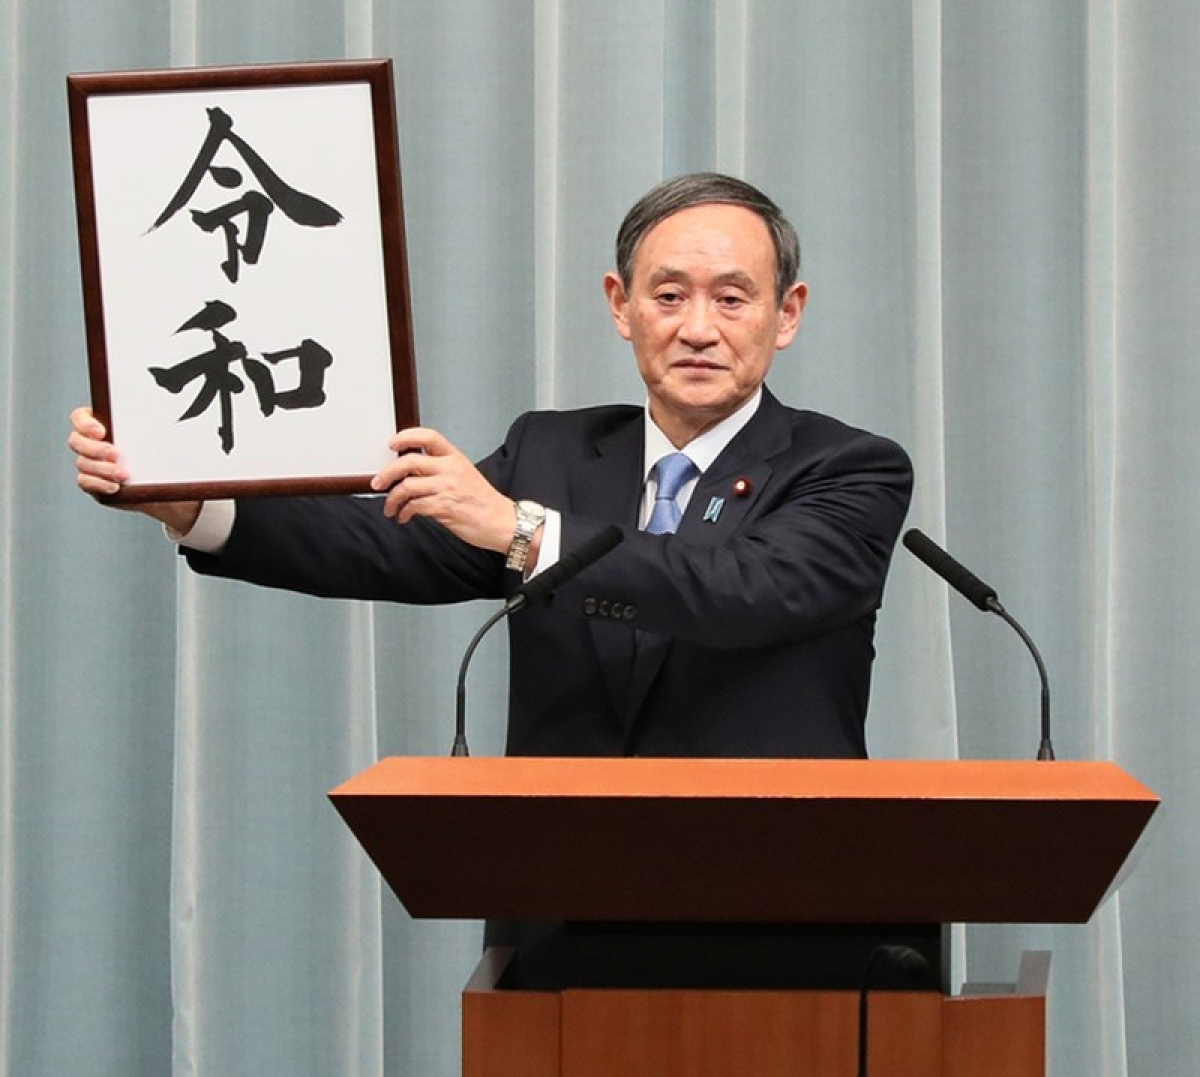 Ông Suga trong buổi họp báo công bố thay đổi Niên hiệu vào ngày 1/4/2019